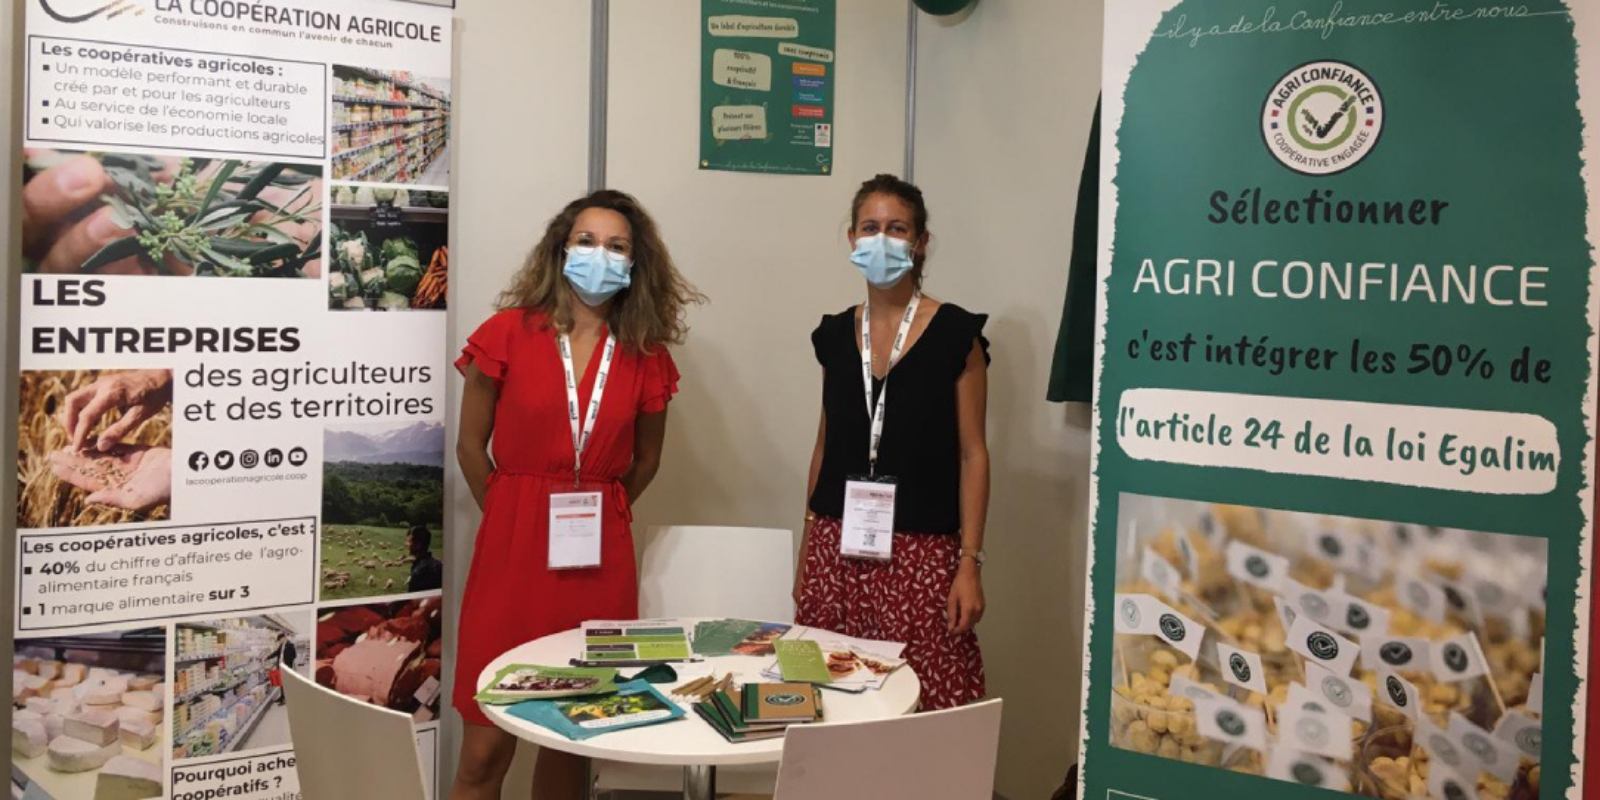 Agri Confiance, le label durable des coopératives, présent au salon Restau’co 